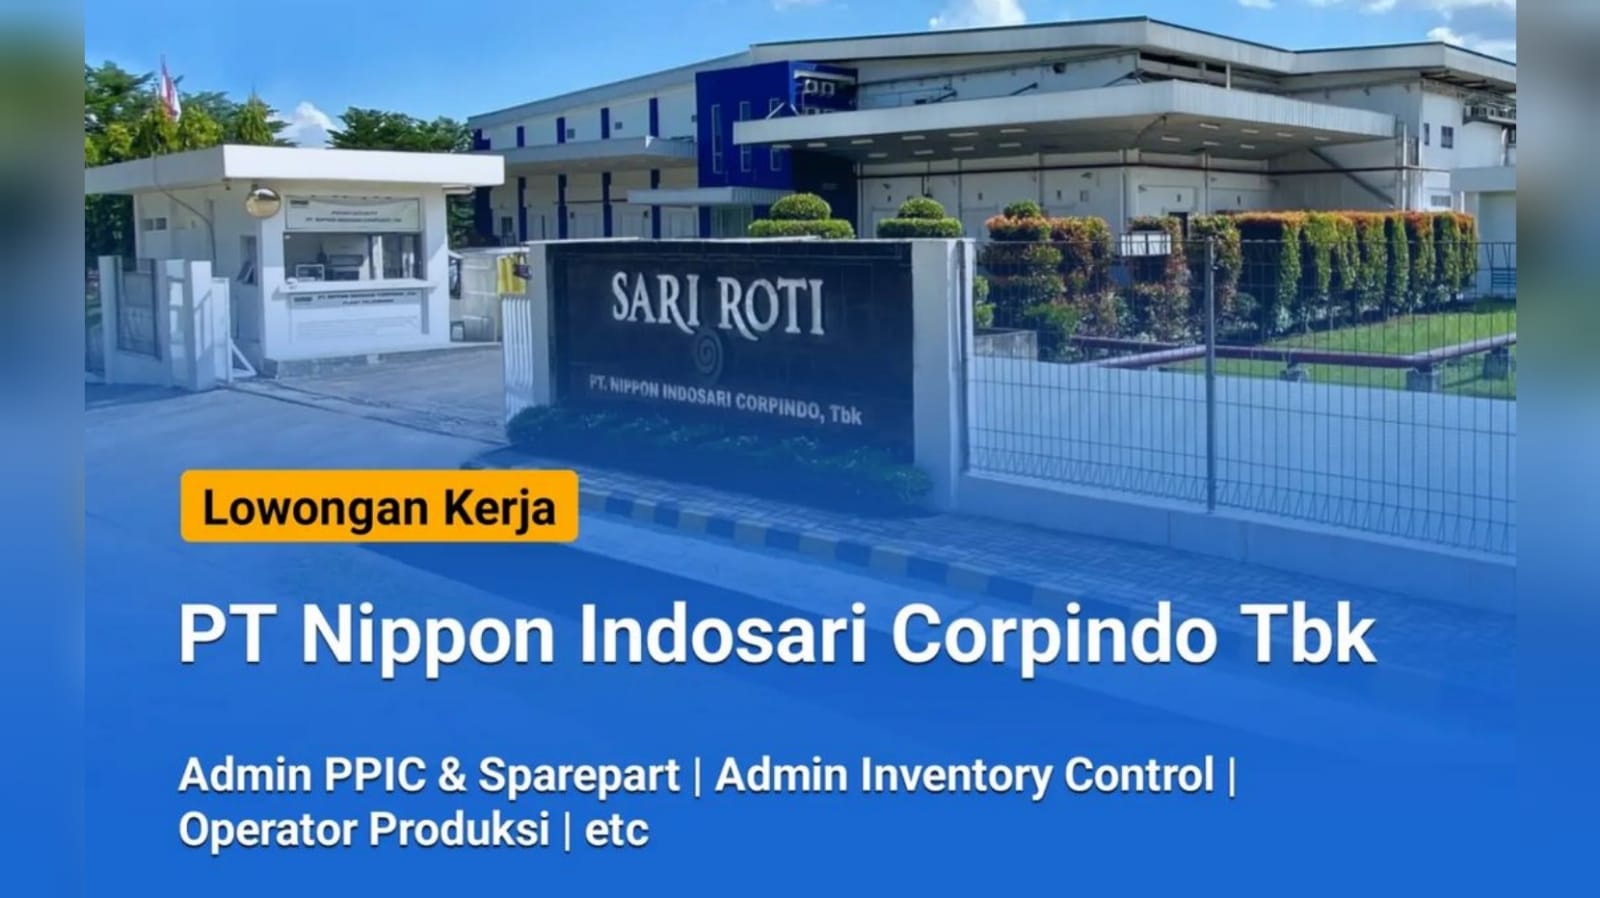 5 Lowongan Kerja Terbaru dari PT Nippon Indosari Corpindo Tbk Perusahaan Sari Roti Terbesar di Indonesia